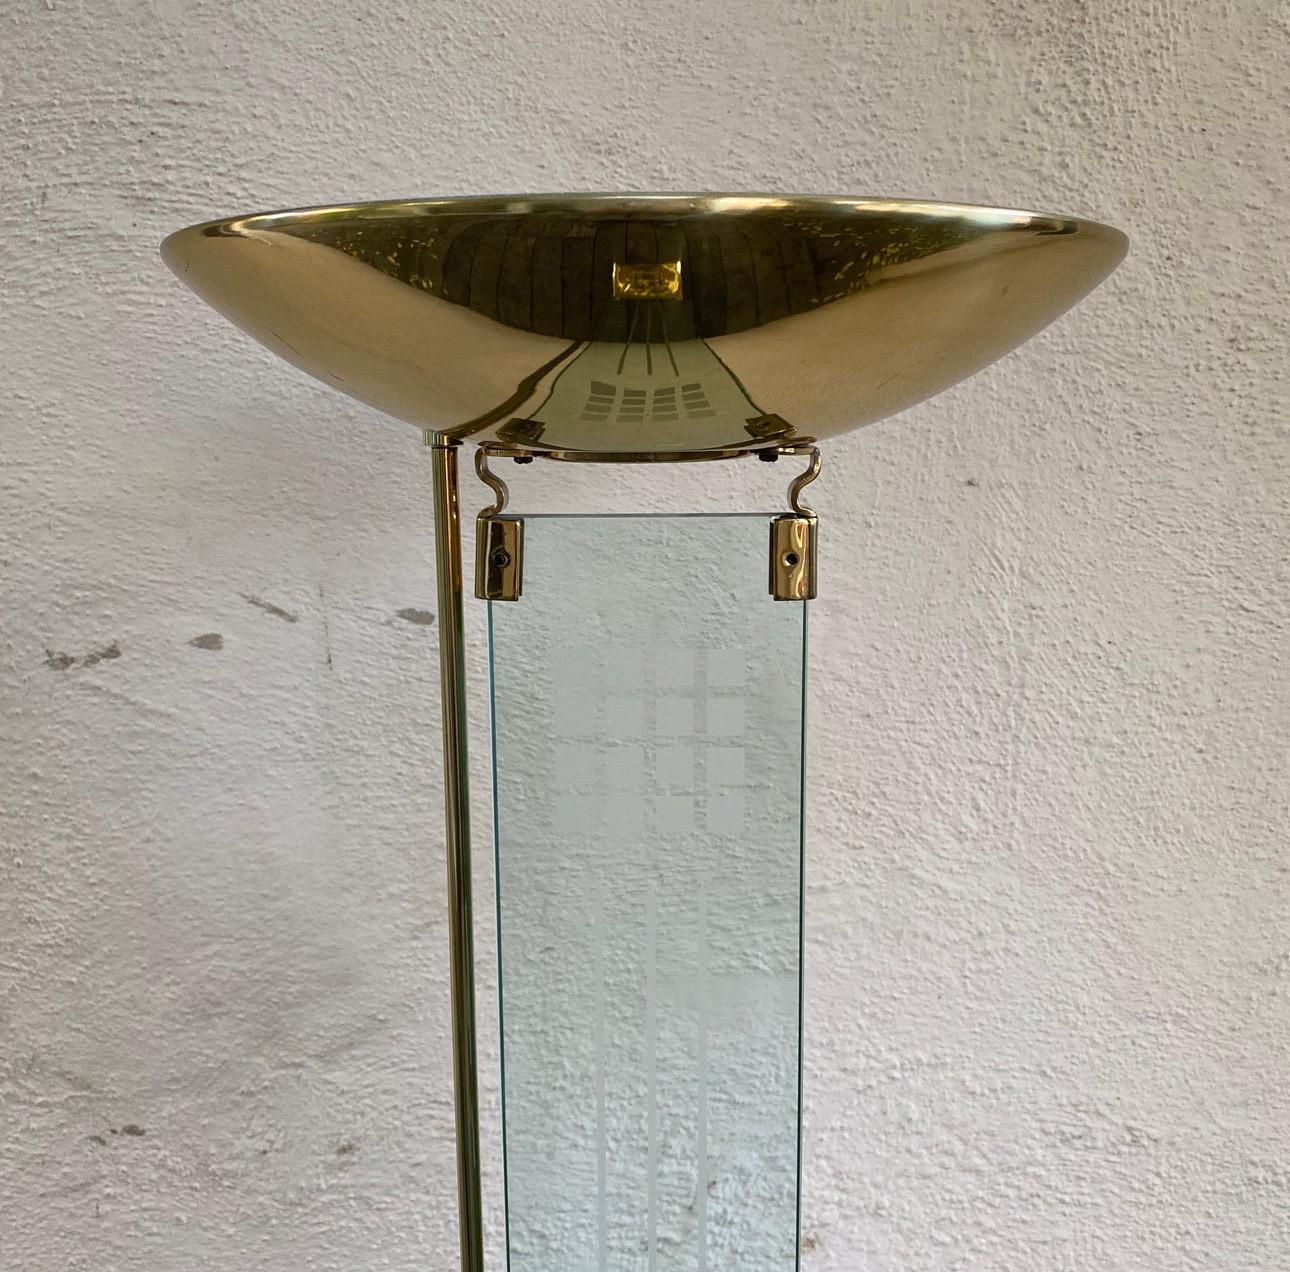 🌟 Atemberaubende Hollywood Regency Stehlampe aus den 1980er Jahren zu verkaufen! 🌟

Diese exquisite Stehlampe im Hollywood-Regency-Stil, die an den Glamour und die Raffinesse des Vintage-Stils erinnert, wertet Ihren Raum auf. Diese Leuchte ist bis